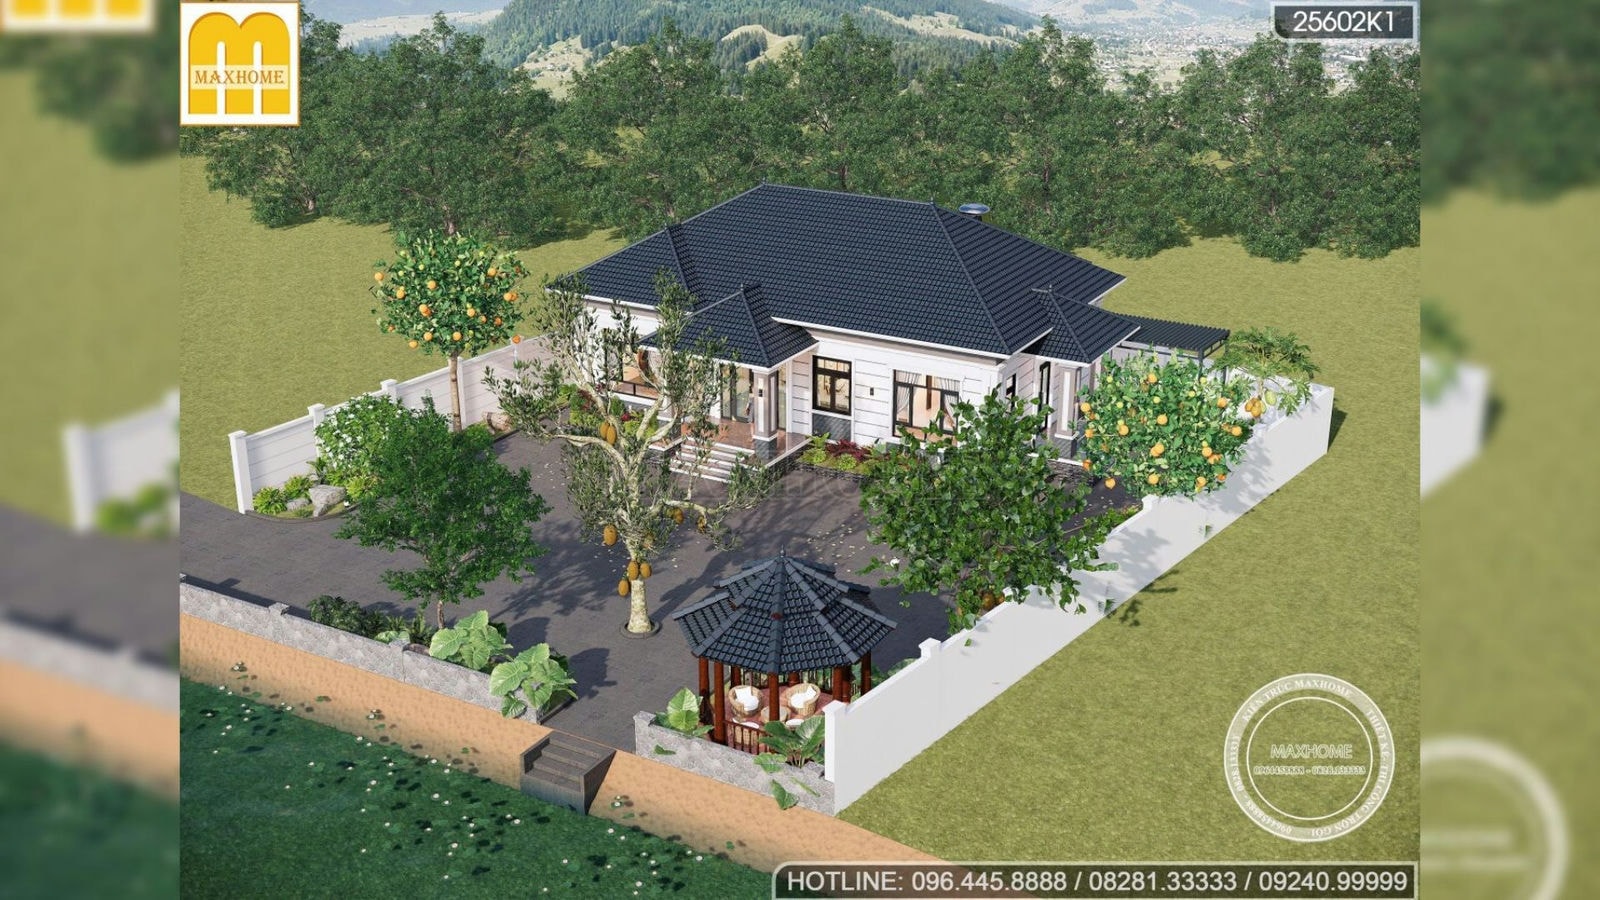 Gợi ý mẫu thiết kế nhà cấp 4 kết hợp với sân vườn thoáng mát chi phí RẺ | MH01947